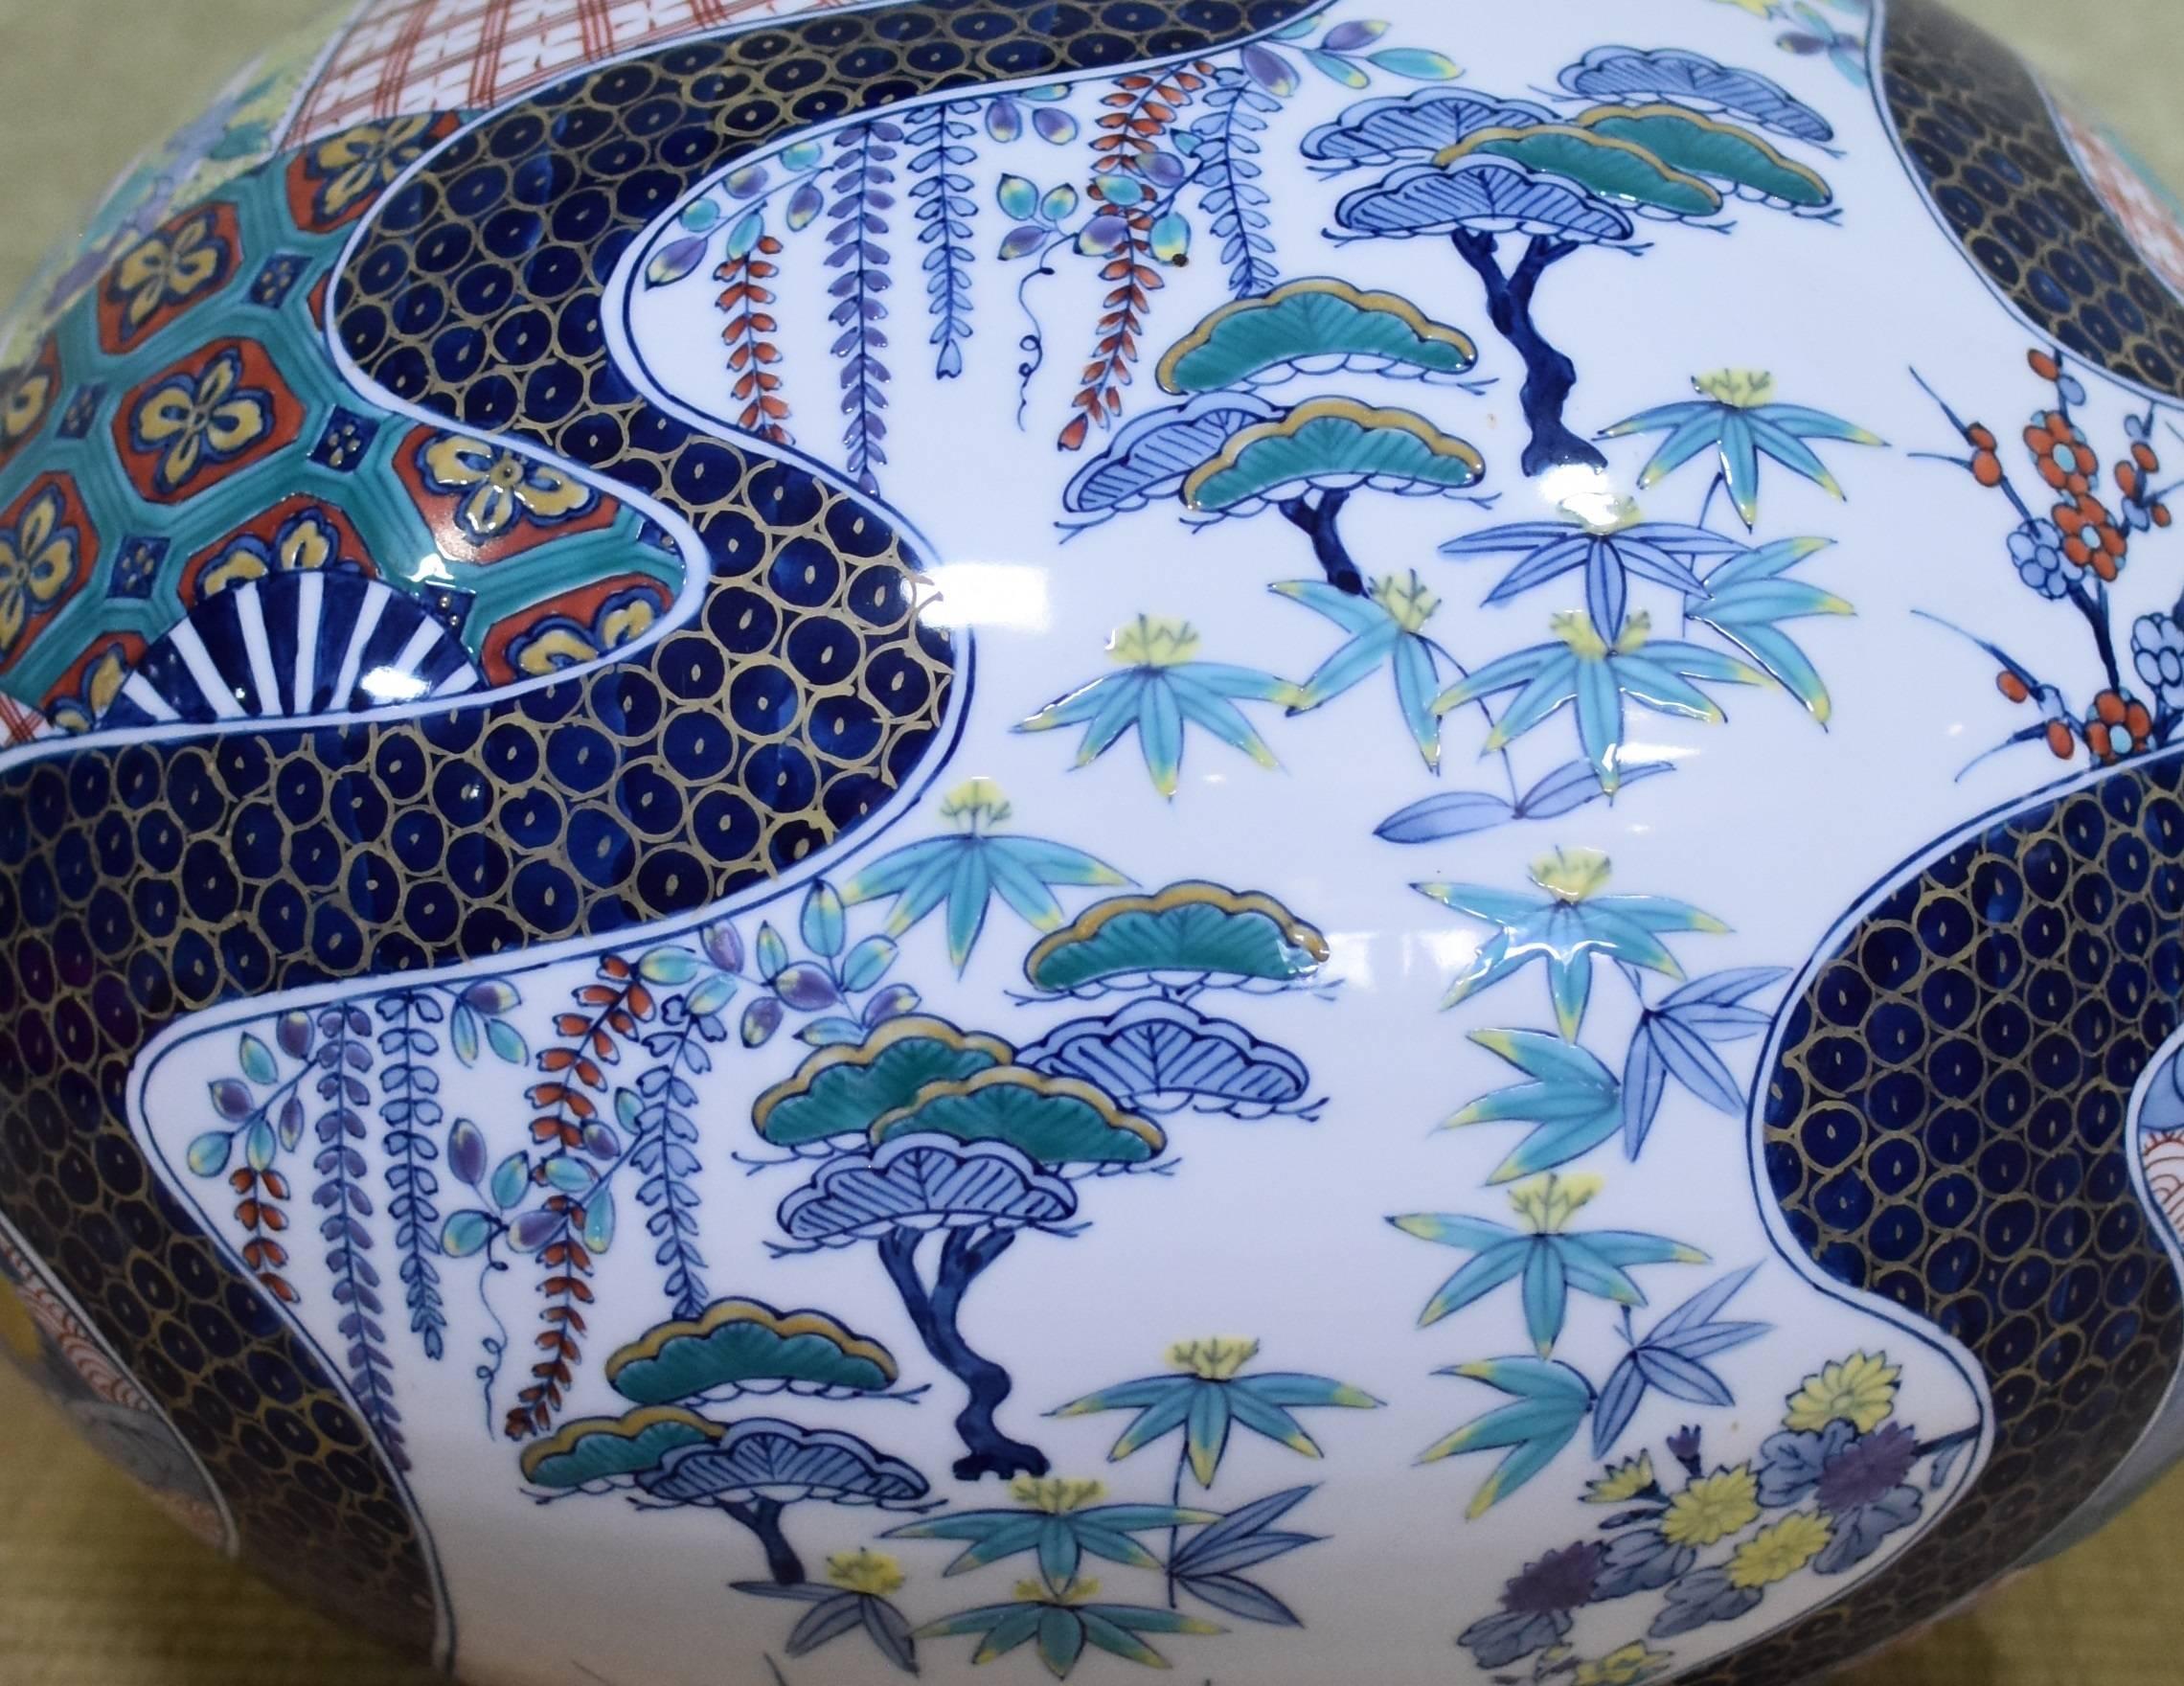 Exquisite große:: zeitgenössische:: eiförmige:: dekorative japanische Porzellanvase:: aufwändig handbemalt auf einem atemberaubend geformten Porzellankörper in Blau und Rot:: ein Meisterwerk des hochgelobten:: preisgekrönten Porzellanmeisters aus